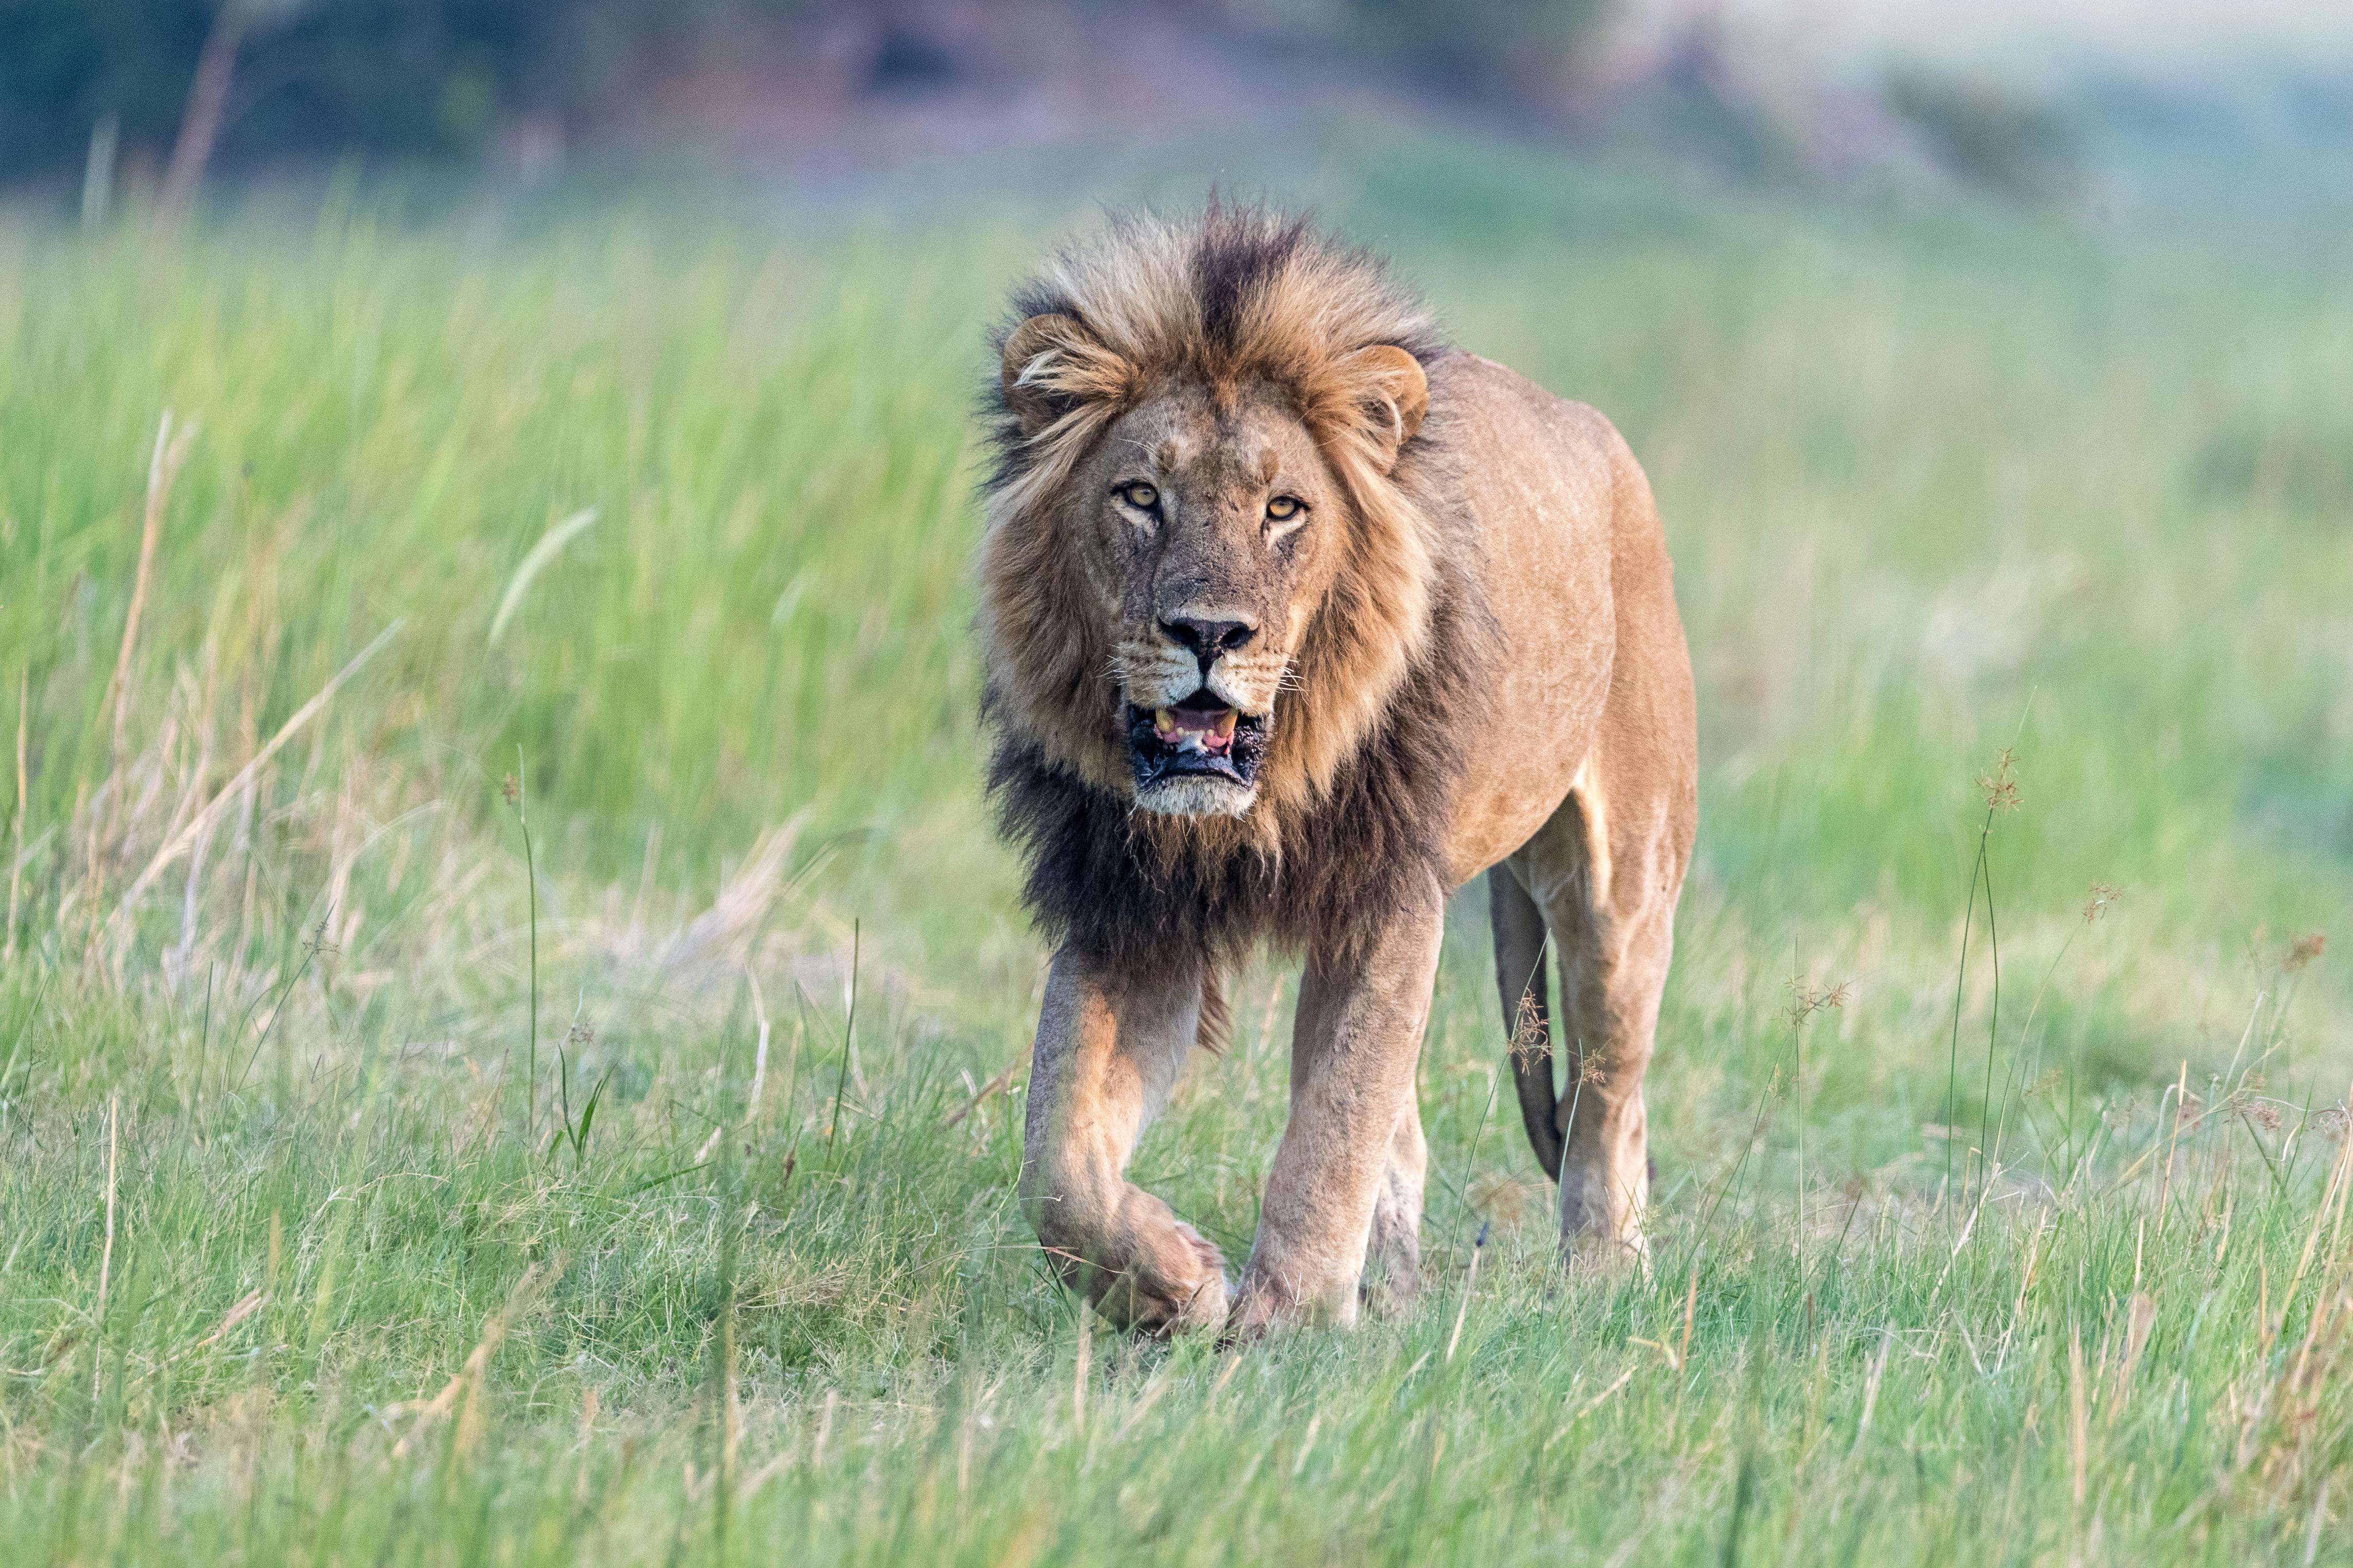 Panthera’s Efforts to Rebuild Gabon’s Lion Population